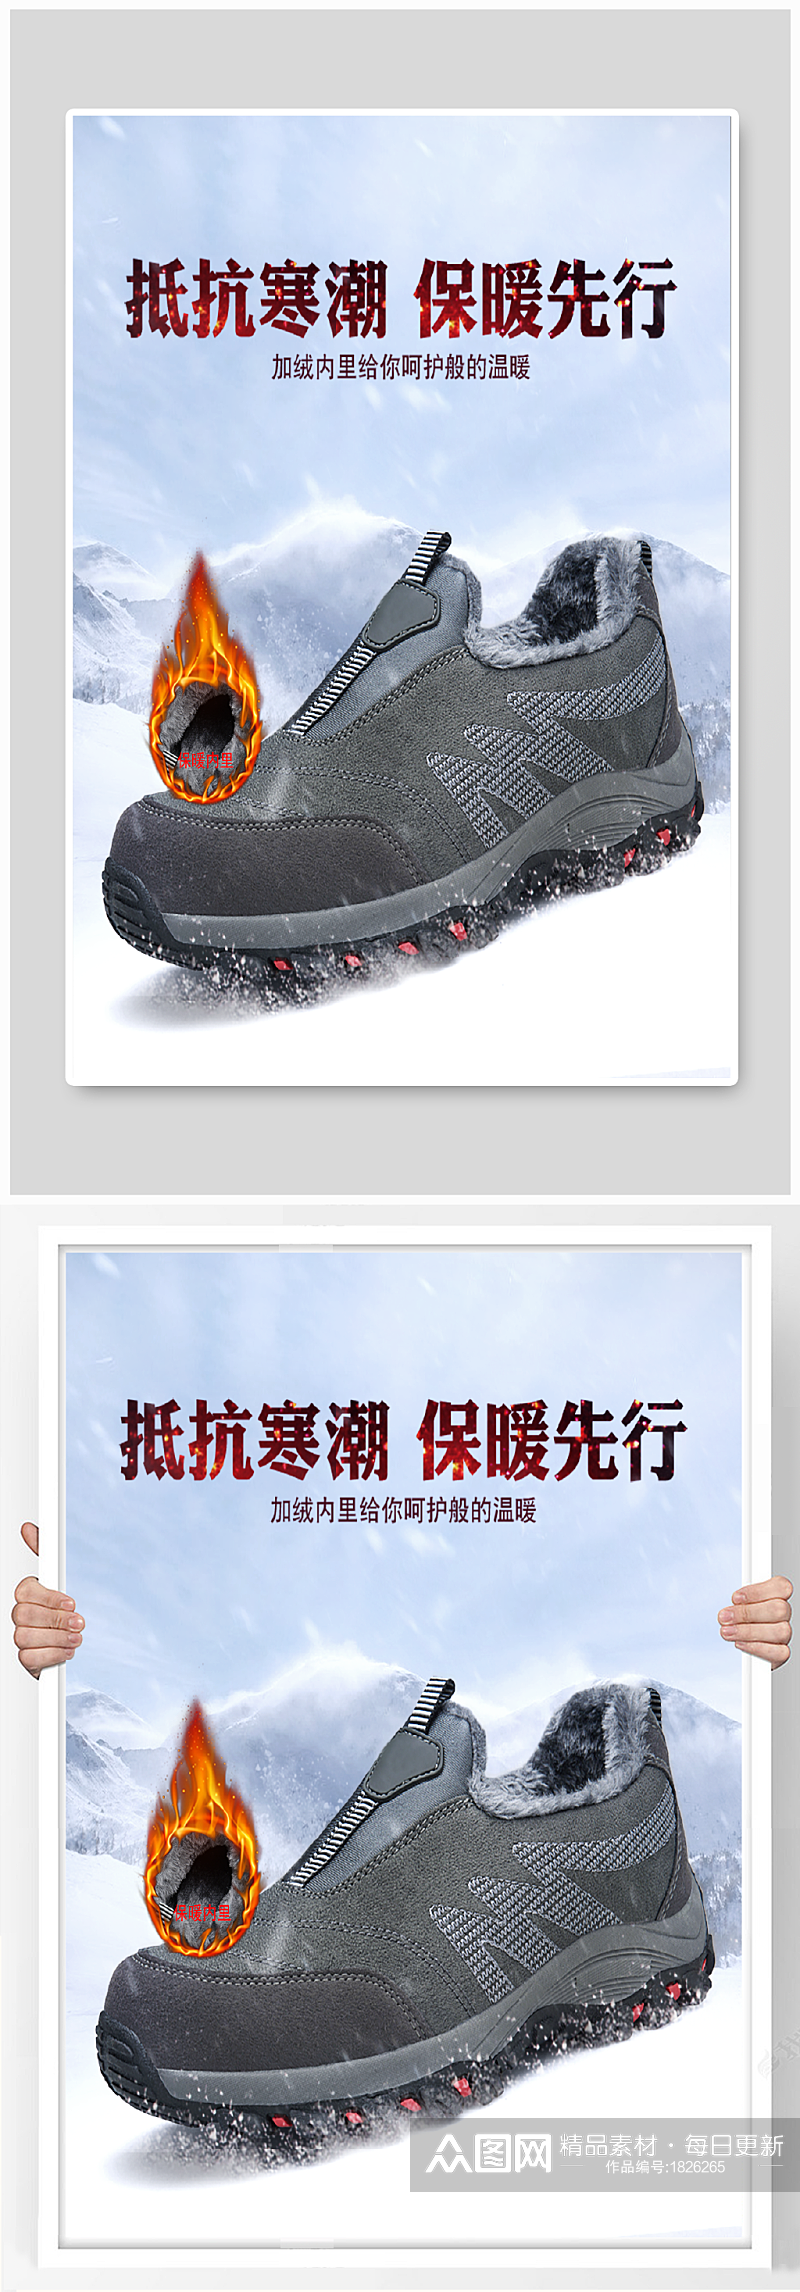 淘宝冬季保暖老人健步鞋活动海报素材